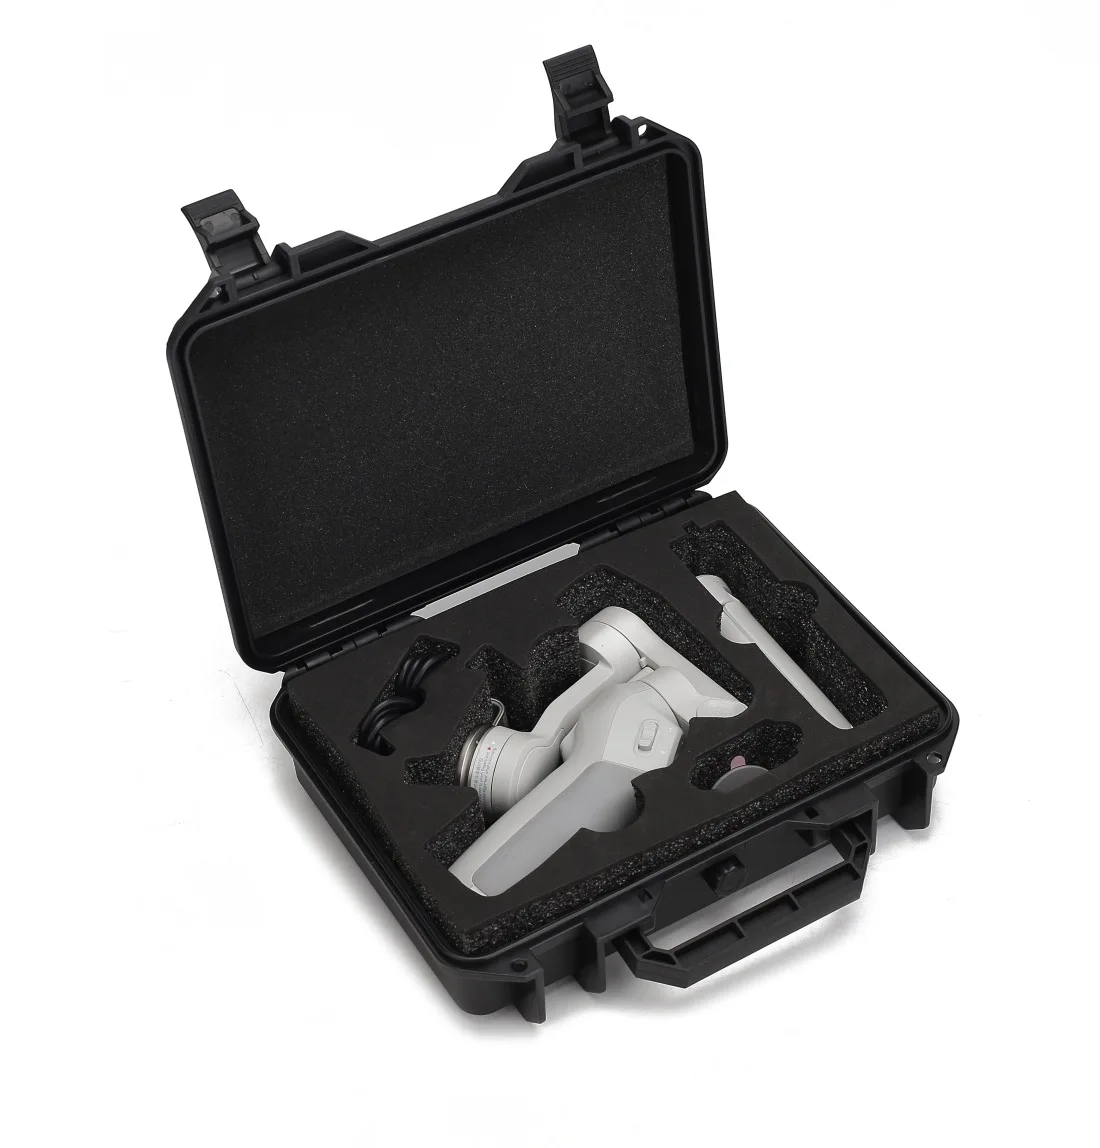 

Водонепроницаемый и взрывозащищенный портативный защитный ящик для DJI Osmo Mobile 3/4, коробки для хранения, сумки, твердый рюкзак, мини-дроны